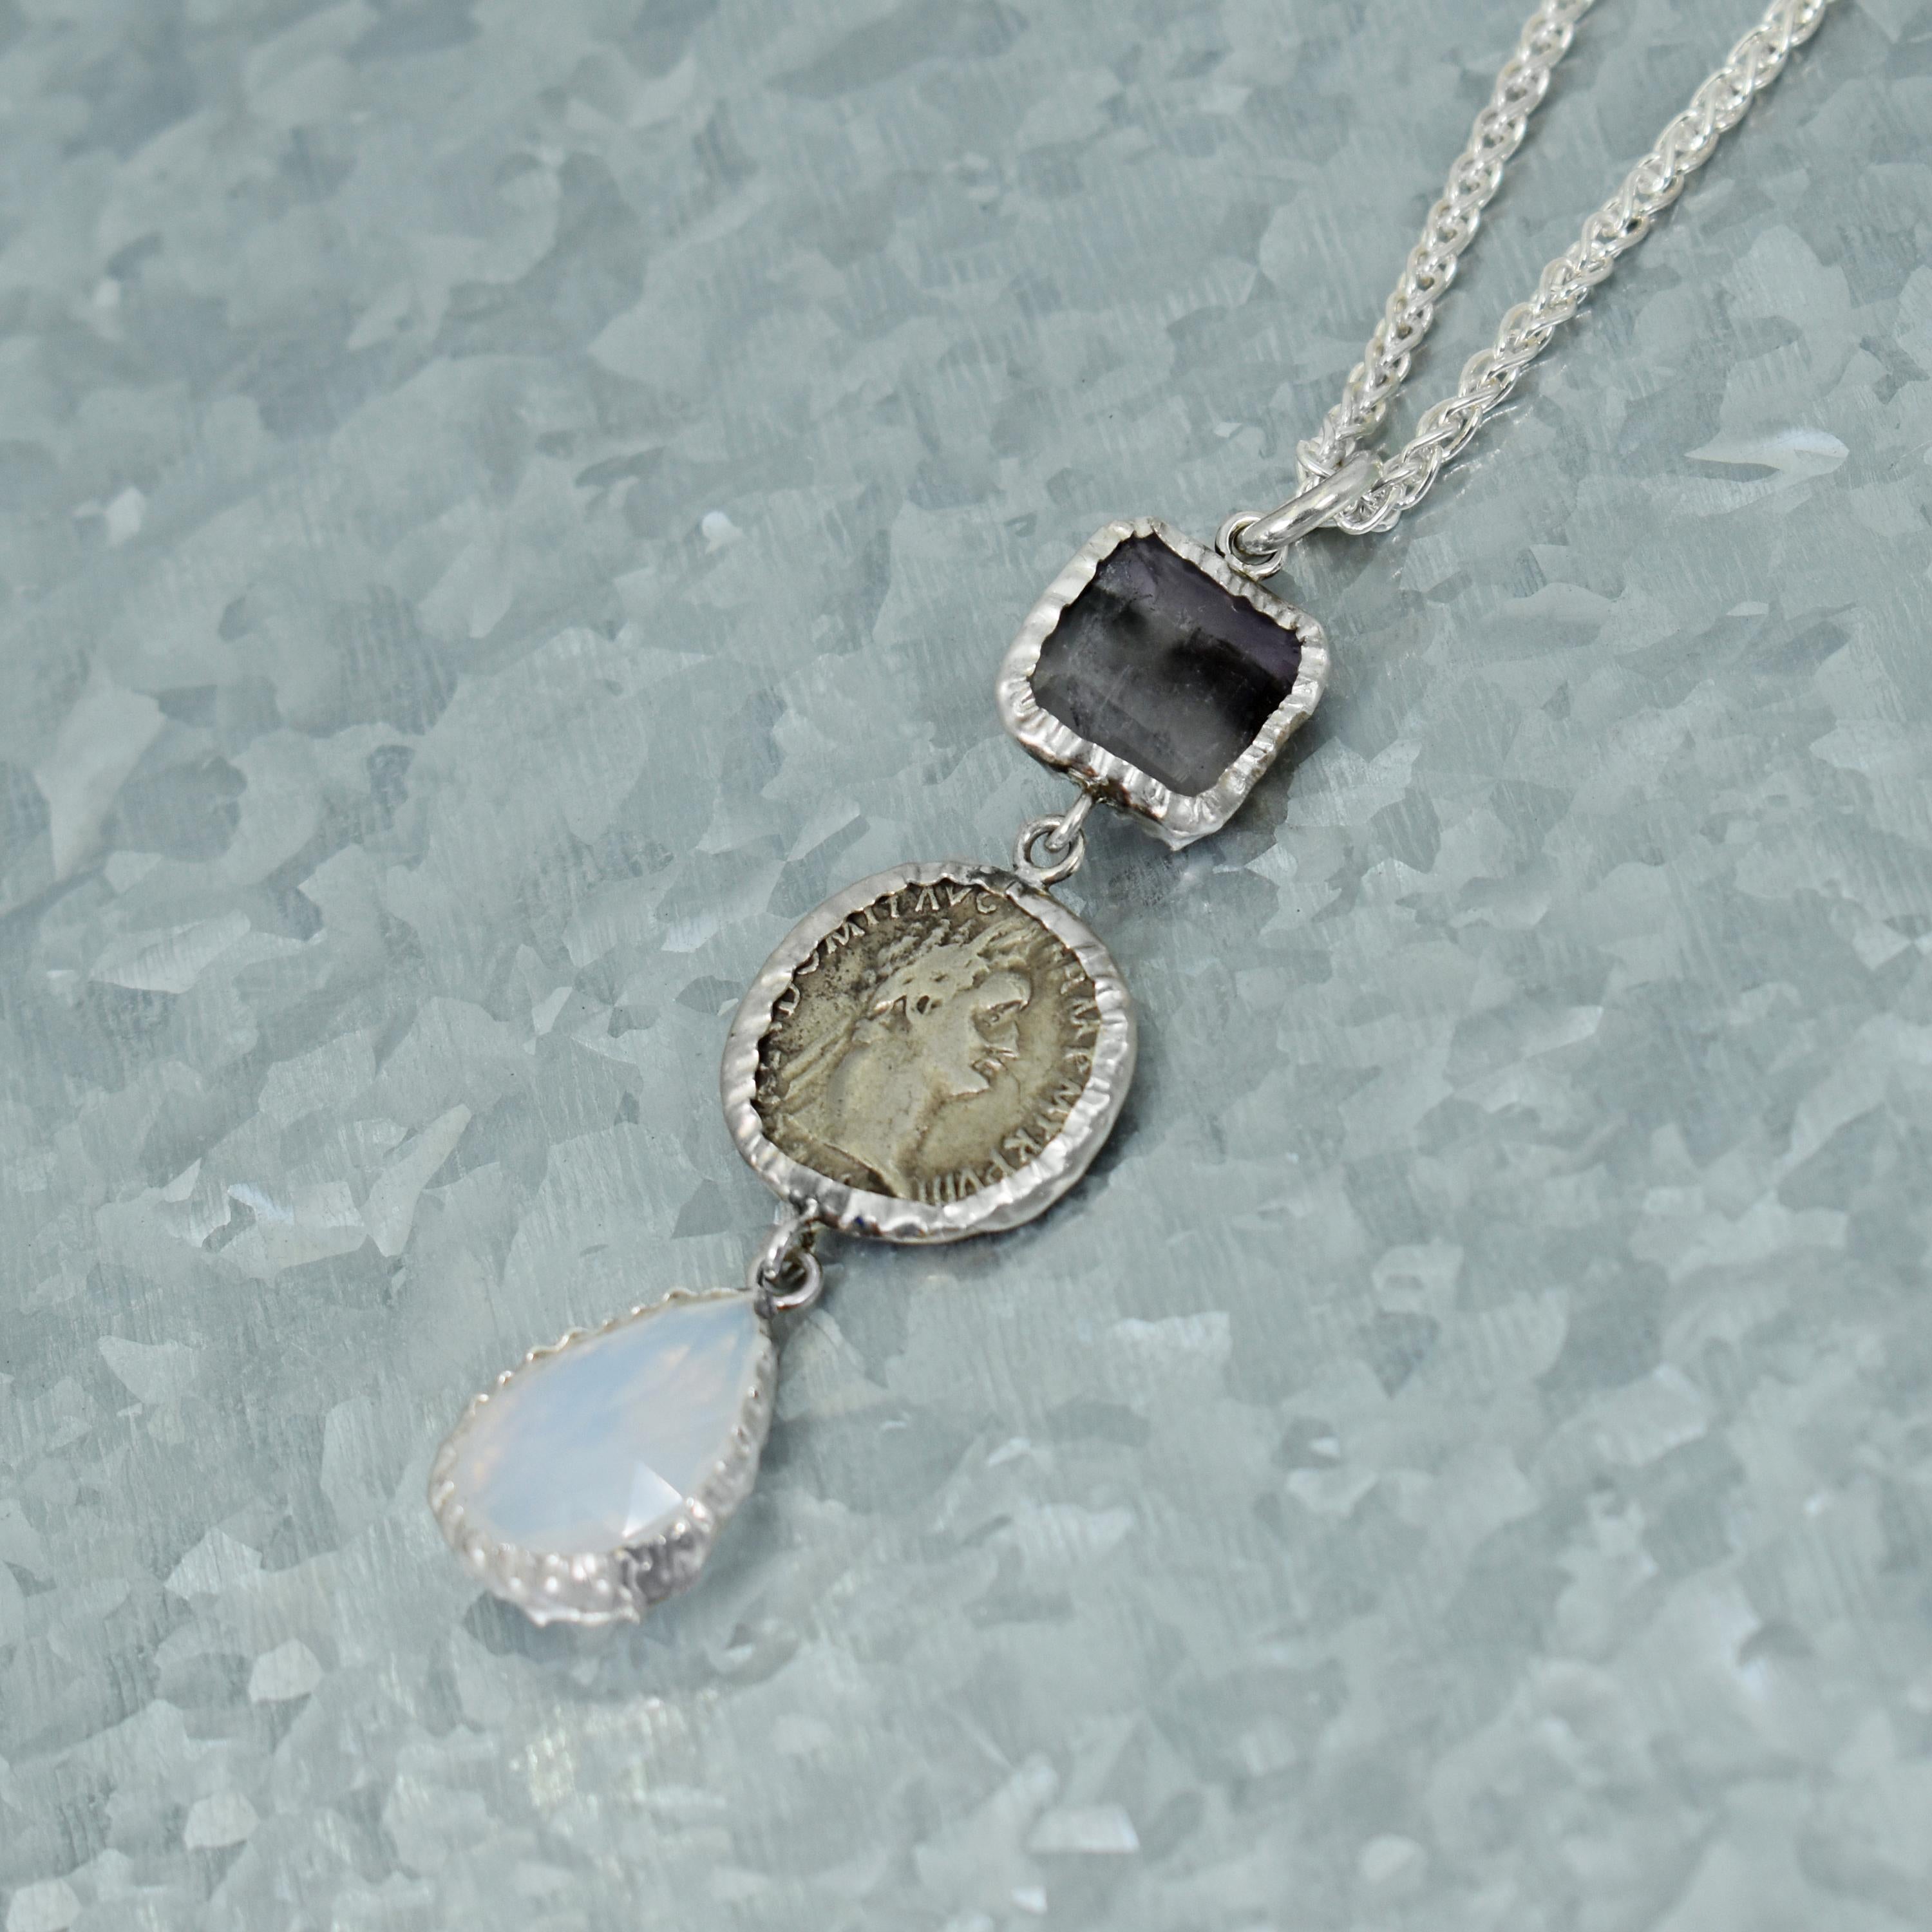 Fluorite Blue John, pièce d'argent de la Grèce antique et pierre de lune taillée en rose, pendentif en argent sterling sur une chaîne de blé en argent sterling de 20 pouces. Le pendentif est d'une longueur de 2,75 pouces. Les boucles d'oreilles